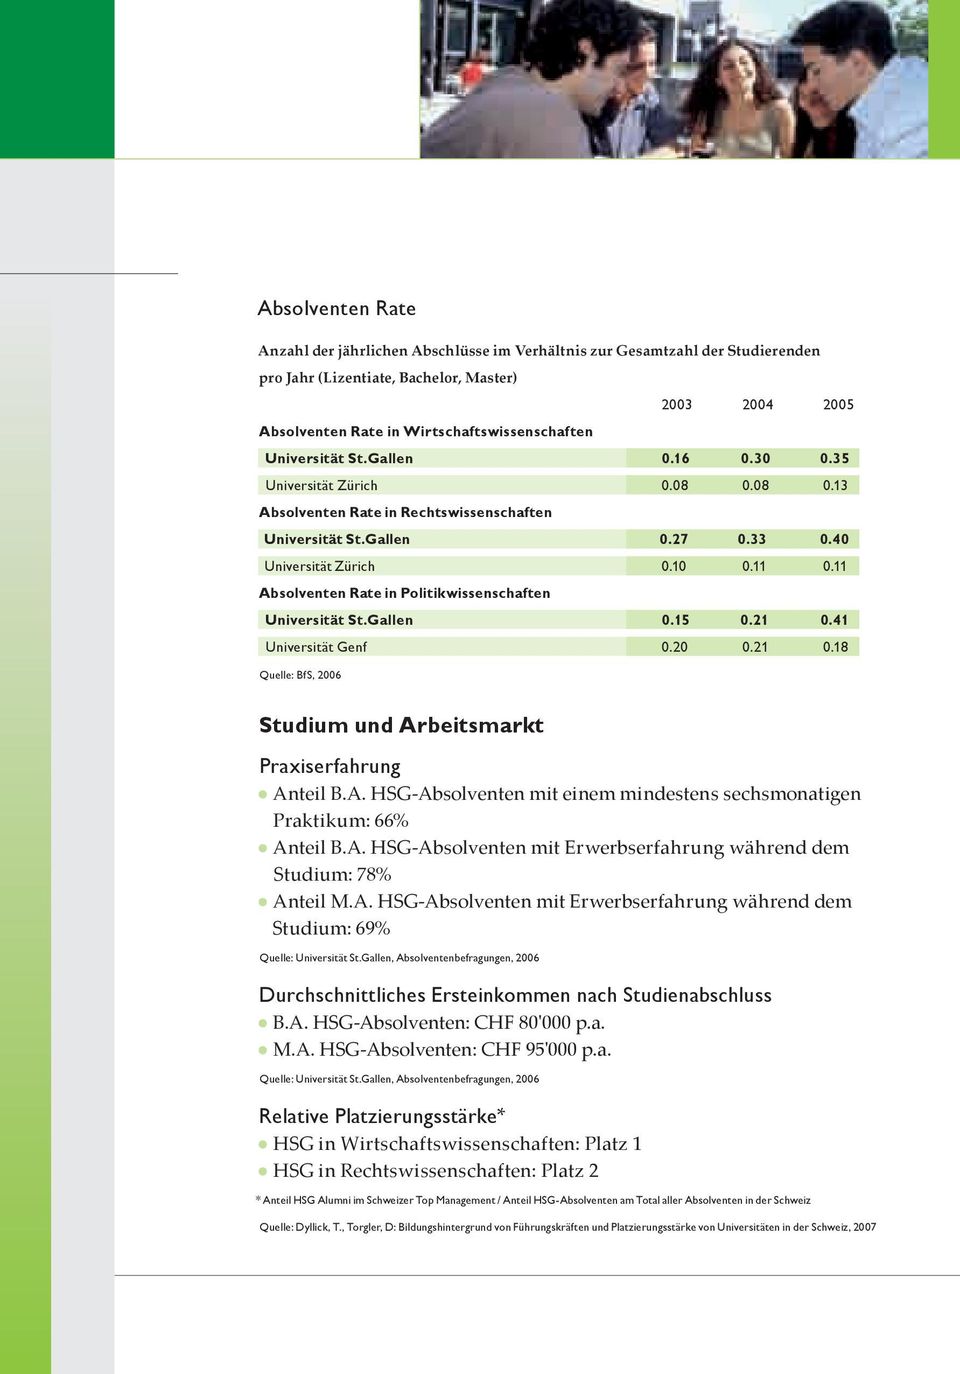 11 Absolventen Rate in Politikwissenschaften Universität St.Gallen 0.15 0.21 0.41 Universität Genf 0.20 0.21 0.18 Quelle: BfS, 2006 Studium und Arbeitsmarkt Praxiserfahrung Anteil B.A. HSG-Absolventen mit einem mindestens sechsmonatigen Praktikum: 66% Anteil B.